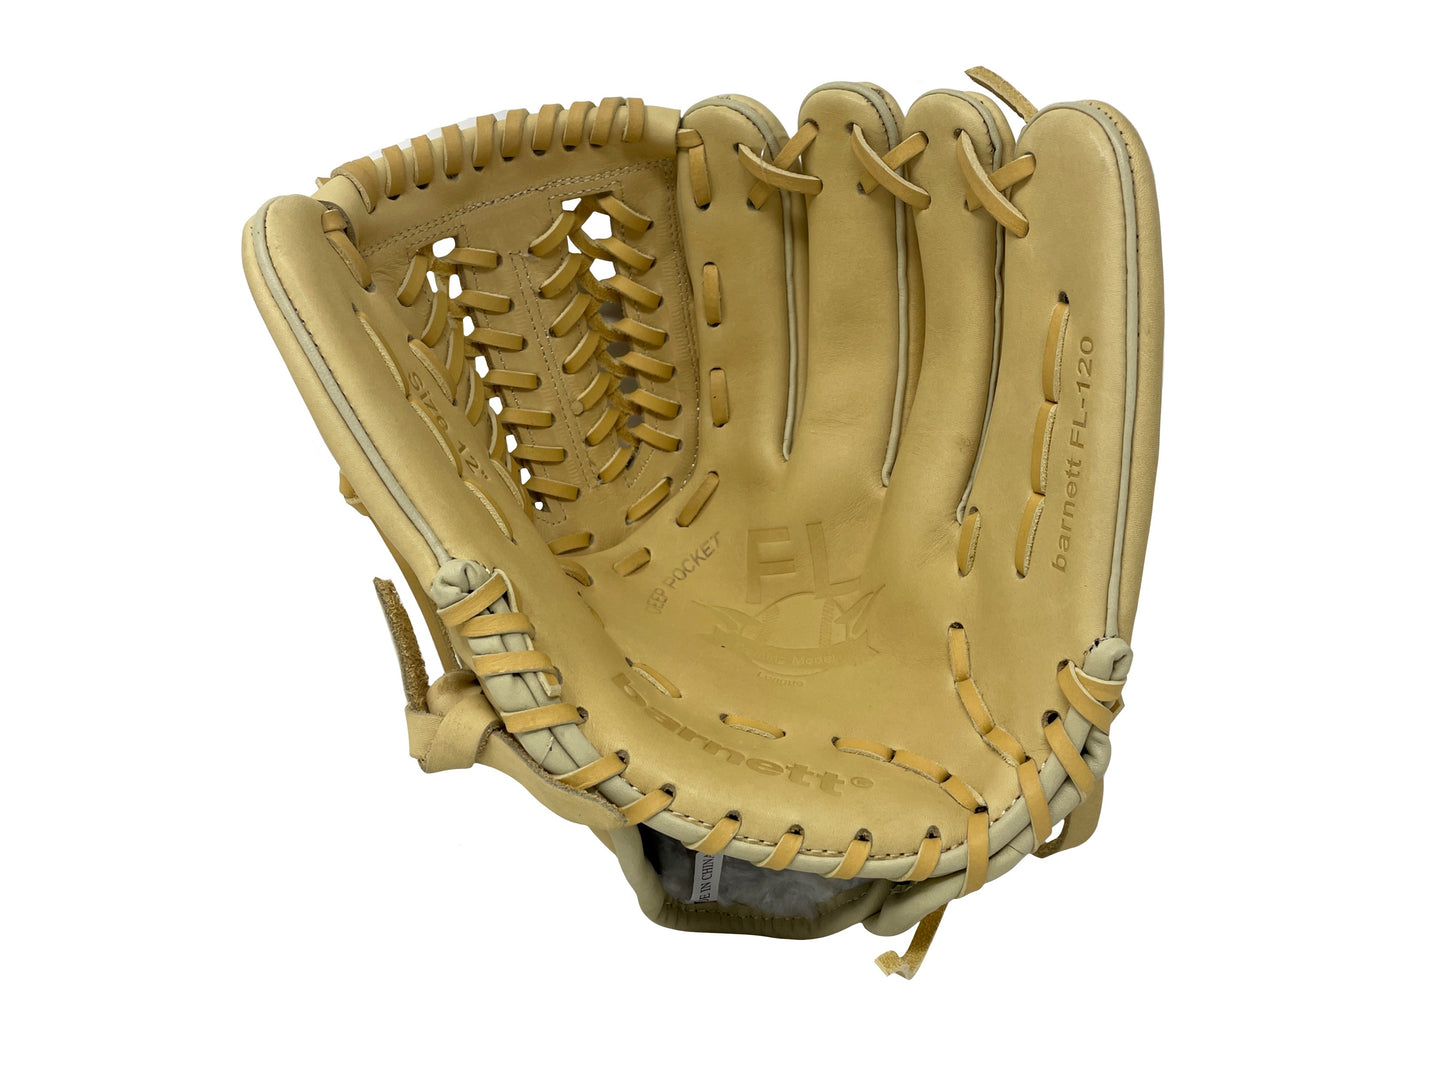 FL-120 Vysoce kvalitní kožené baseballové rukavice (celokožené) infield / outfield /pitcher, béžová